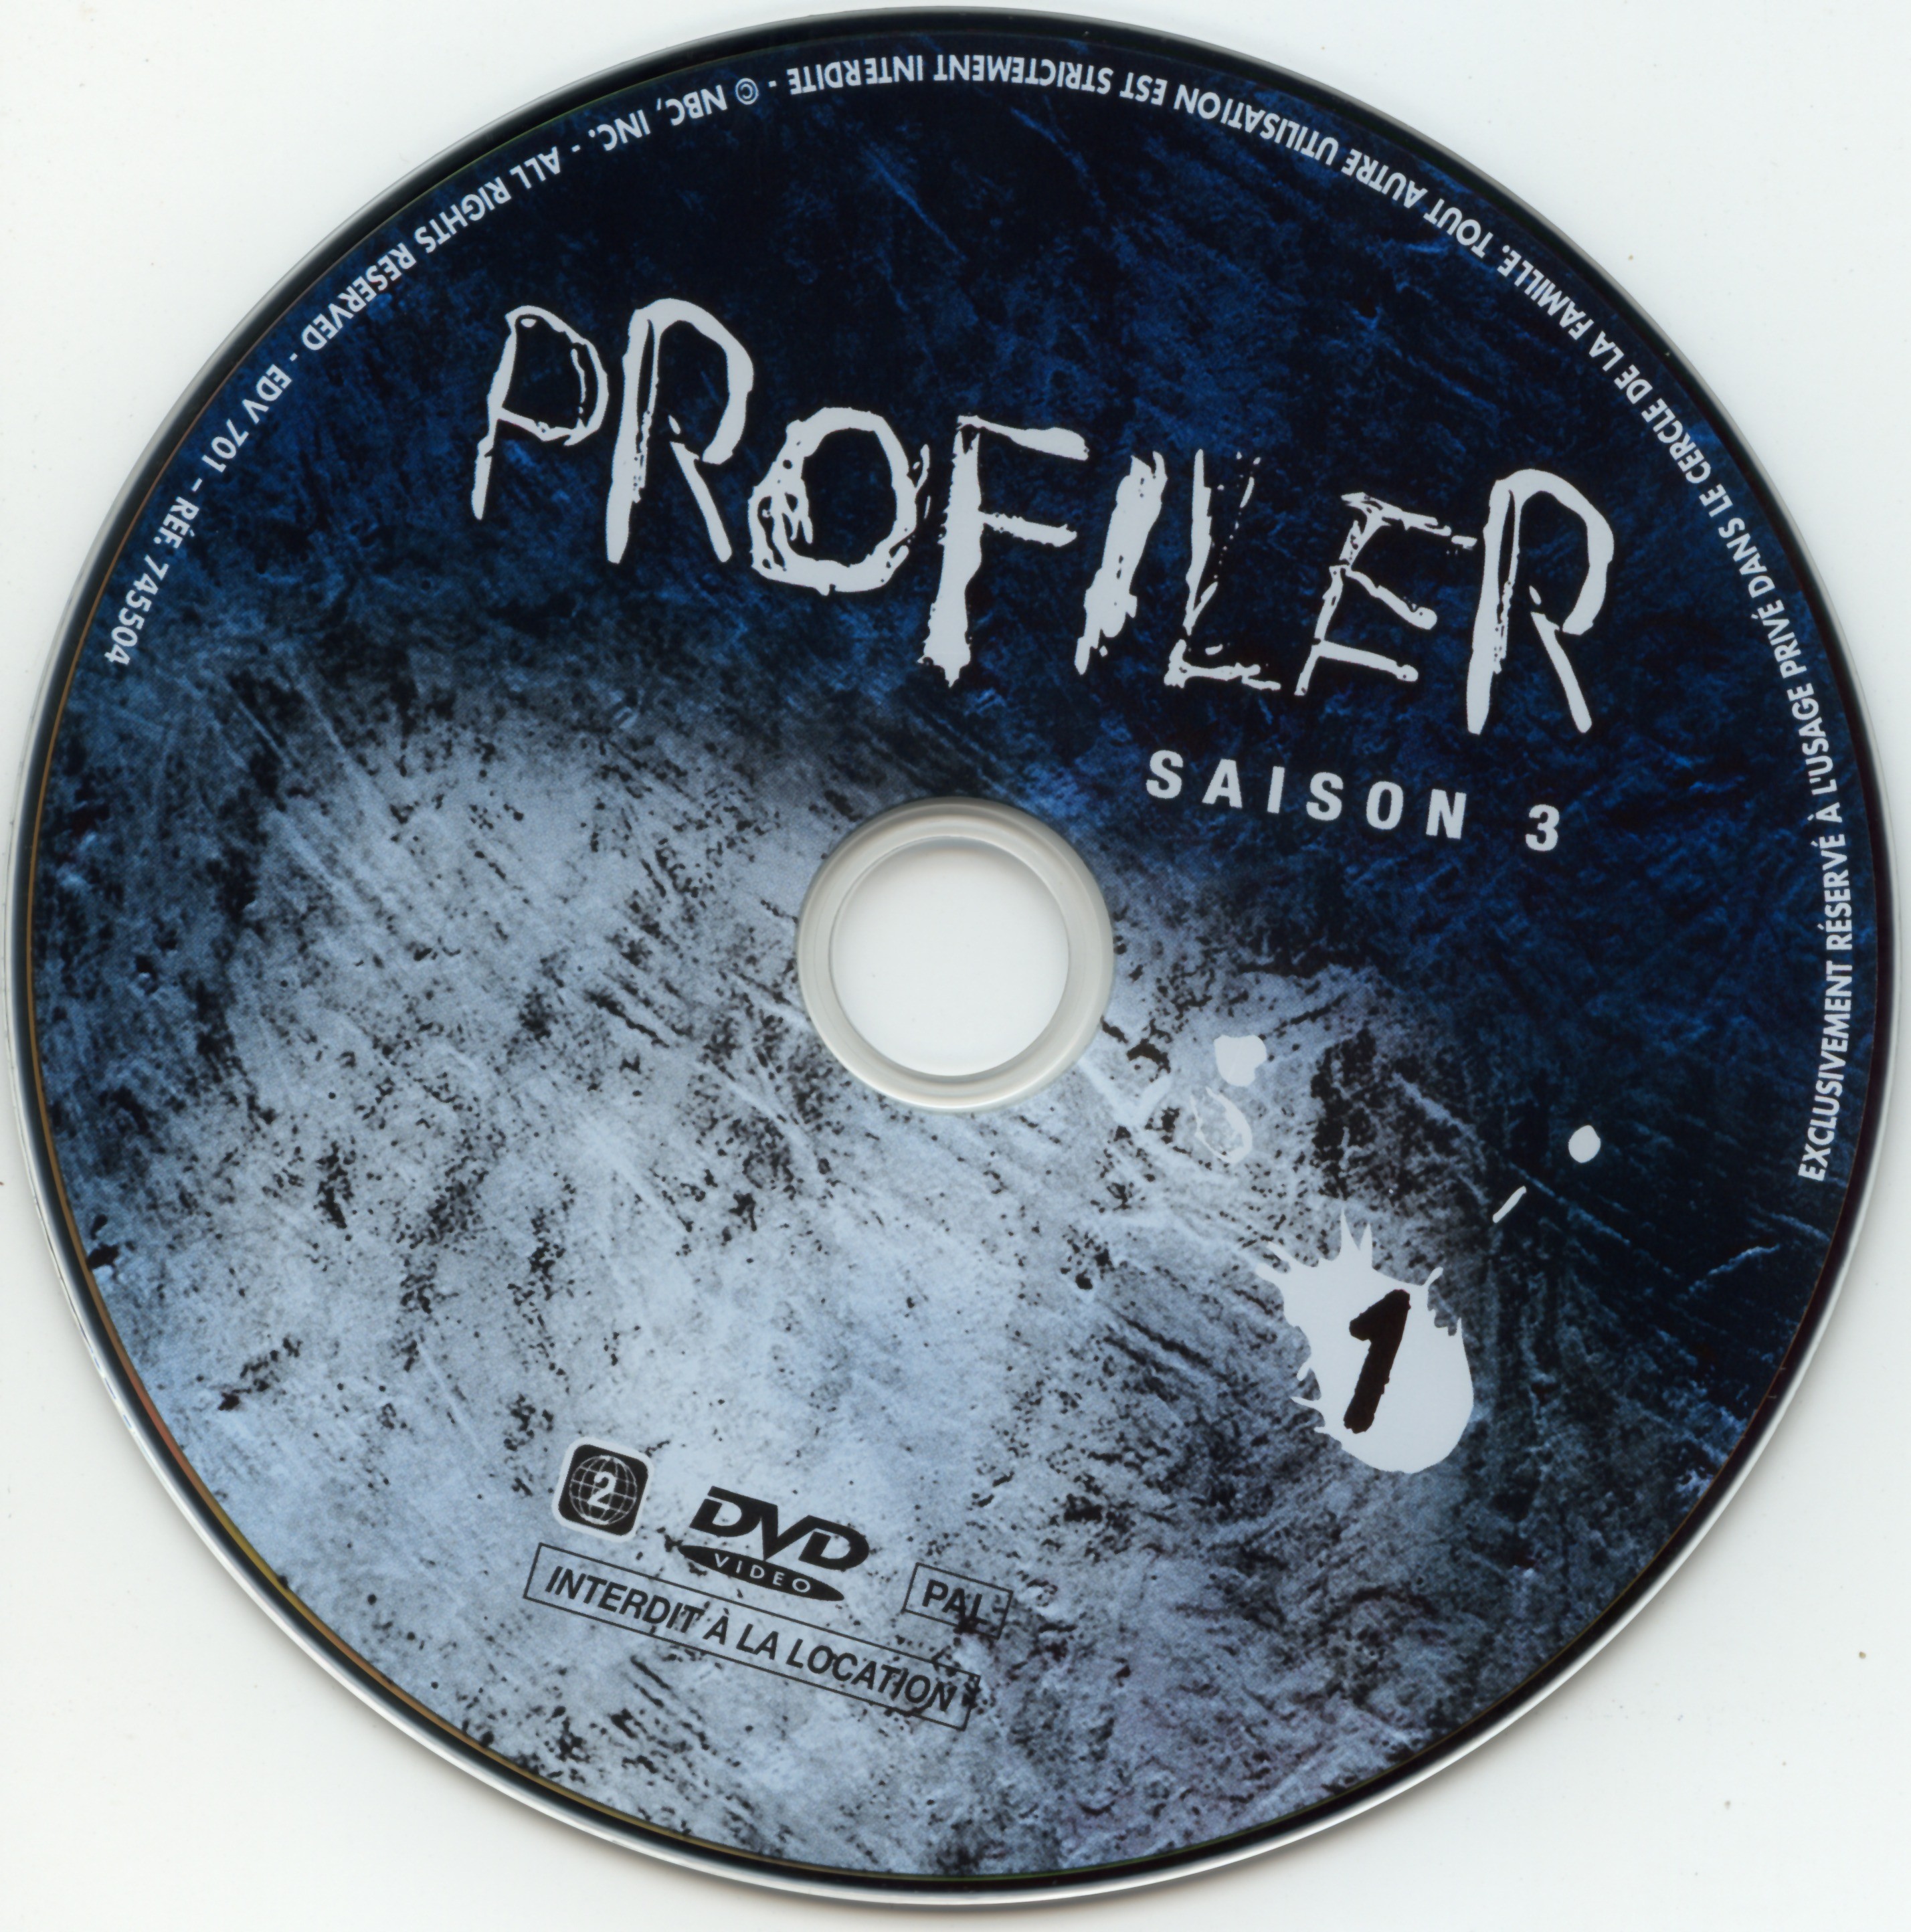 Profiler saison 3 DVD 1